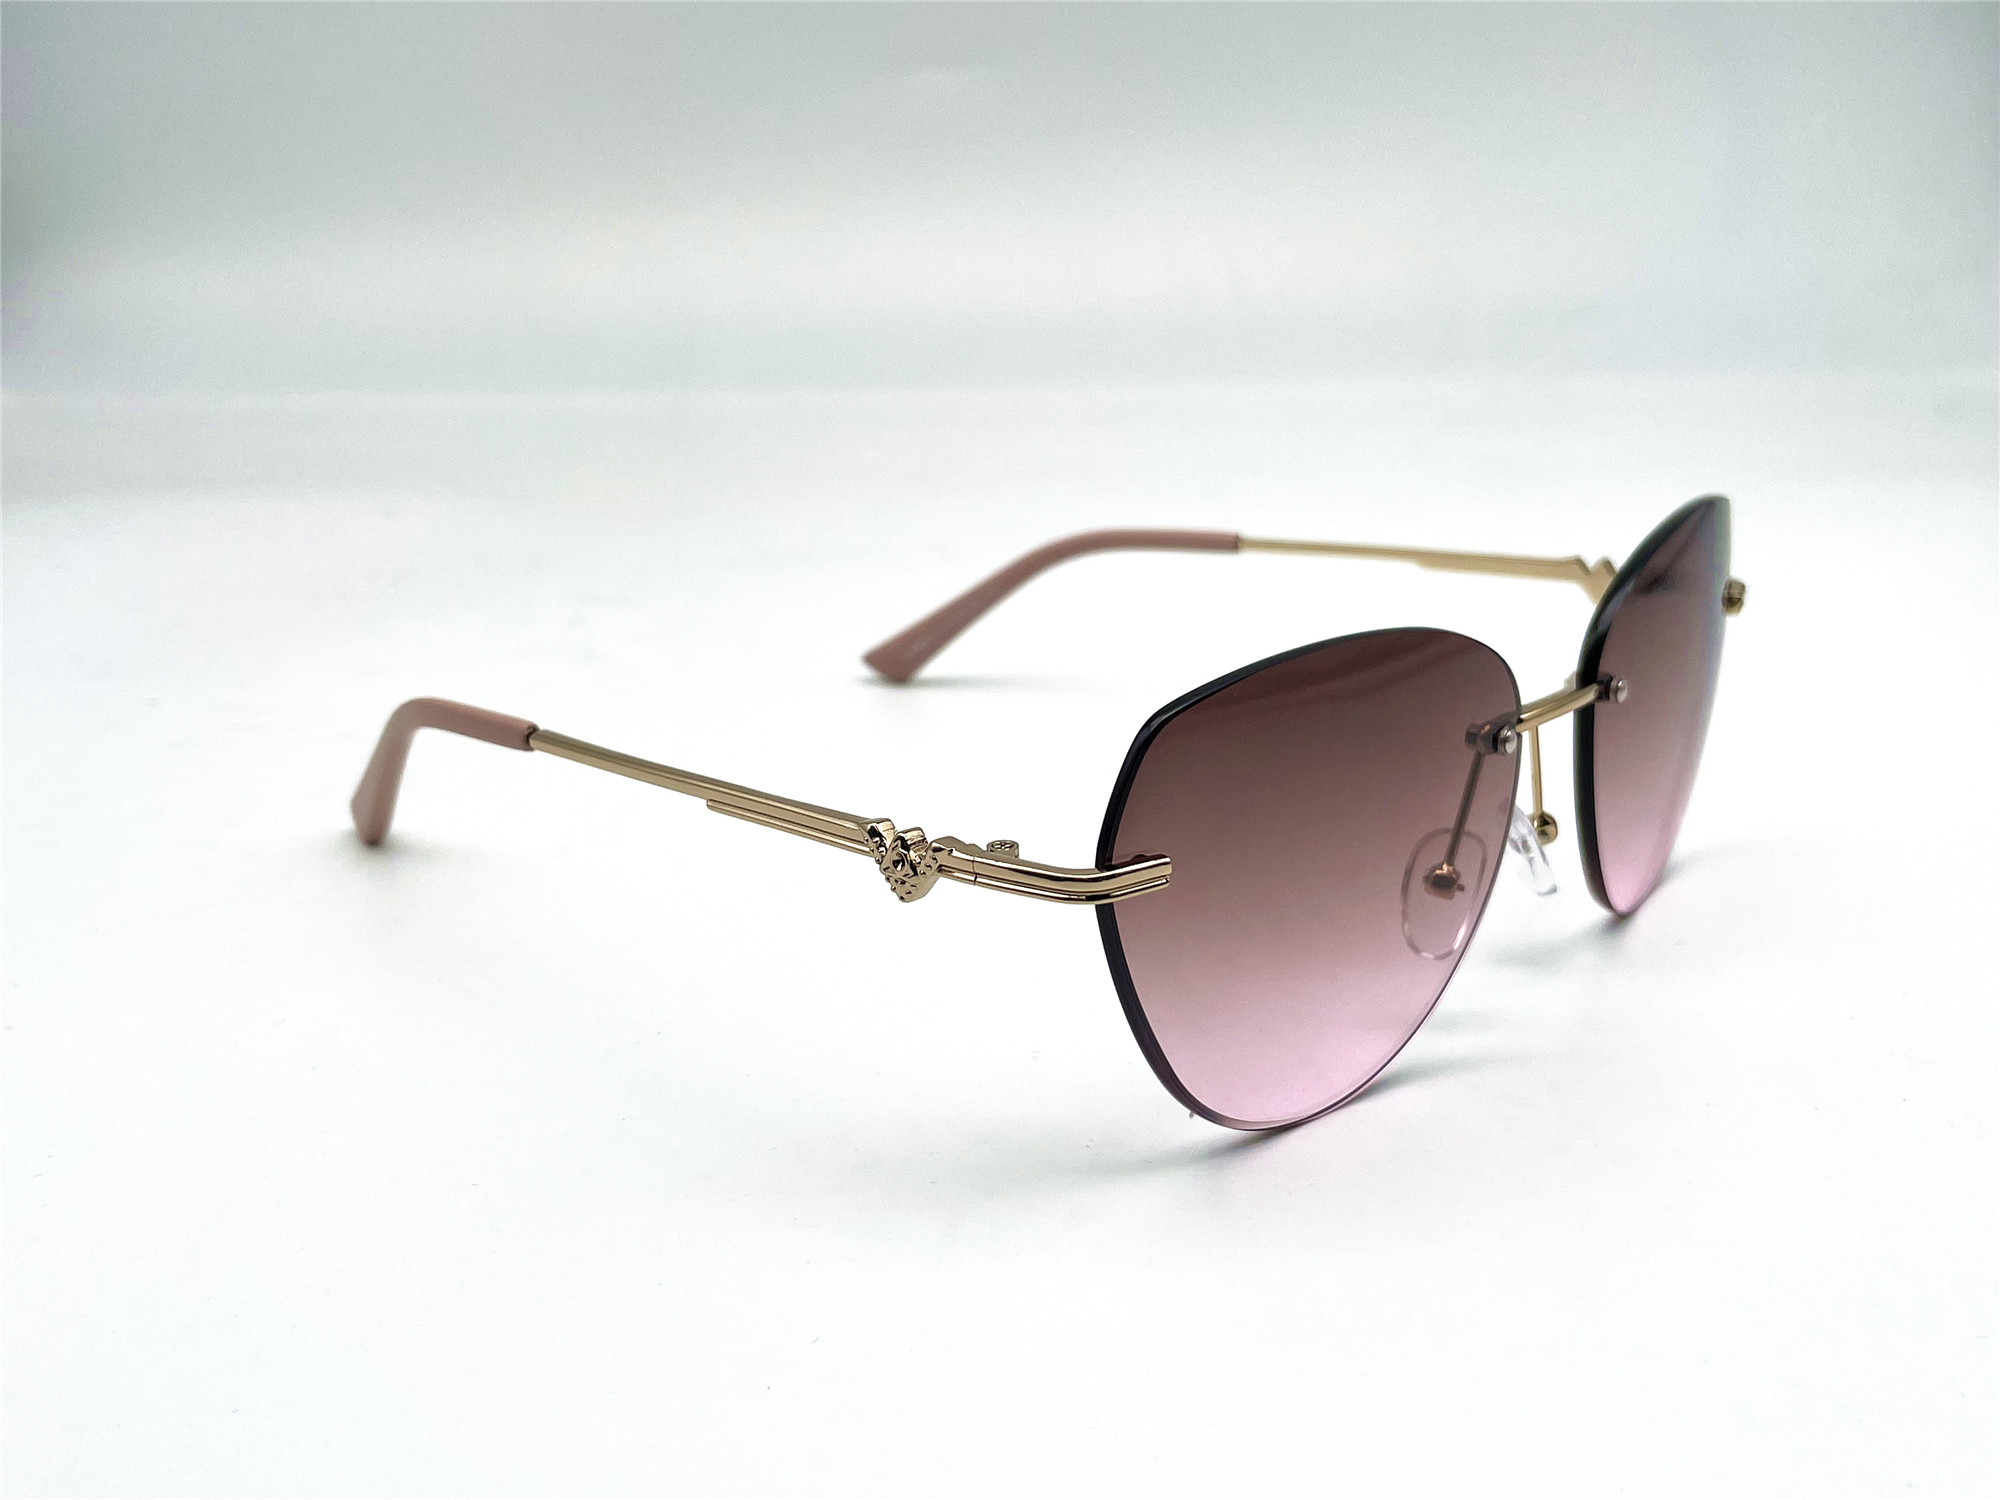  Солнцезащитные очки картинка Женские YiMei  Авиаторы 2363-C4 